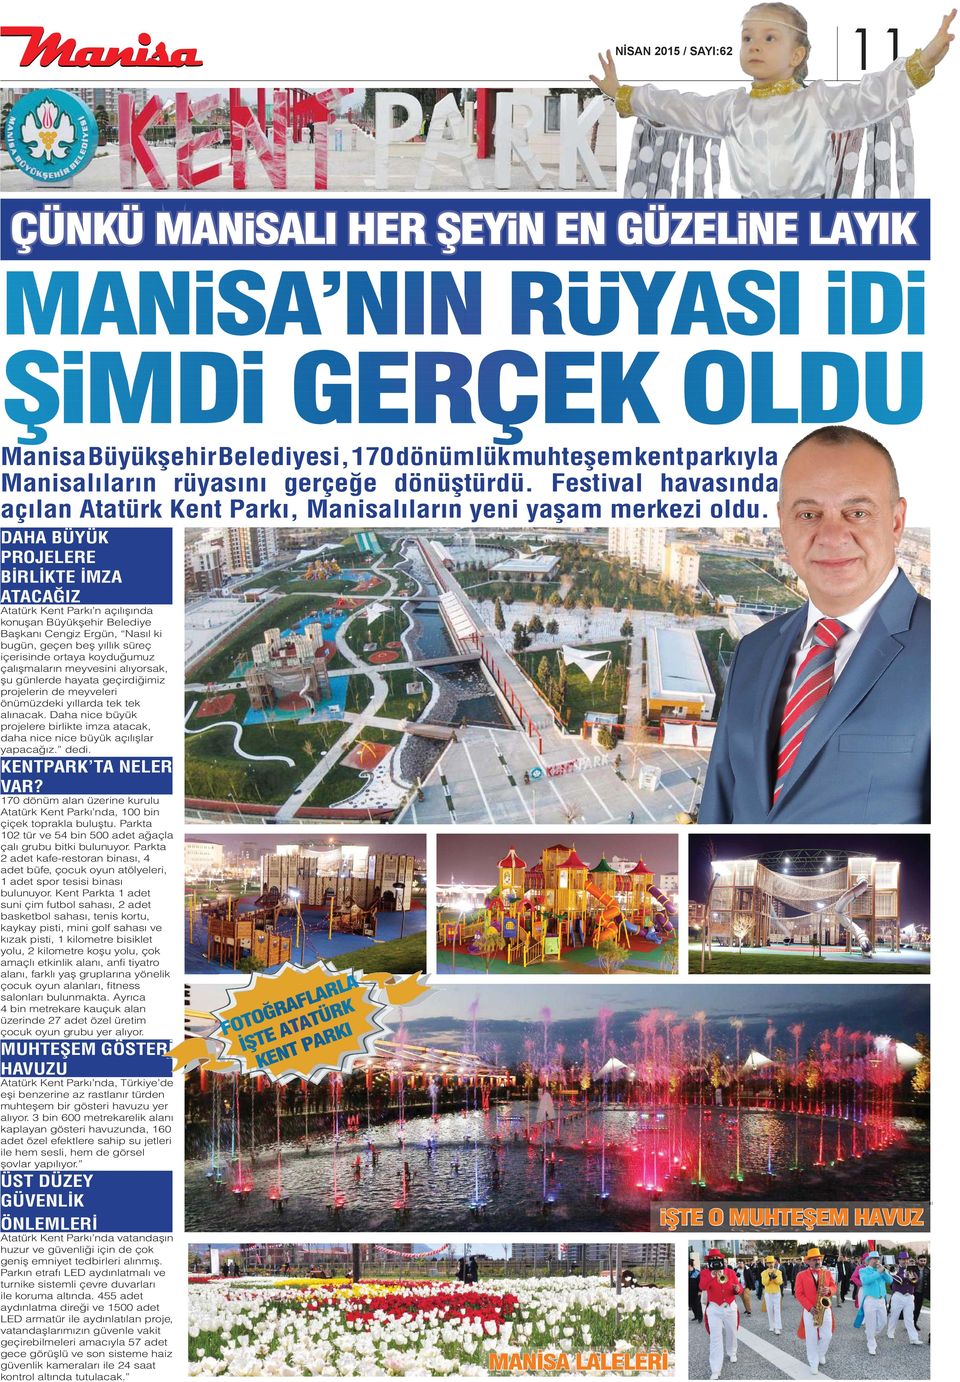 DAHA BÜYÜK PROJELERE BİRLİKTE İMZA ATACAĞIZ Atatürk Kent Parkı n açılışında konuşan Başkanı Cengiz Ergün, Nasıl ki bugün, geçen beş yıllık süreç içerisinde ortaya koyduğumuz çalışmaların meyvesini